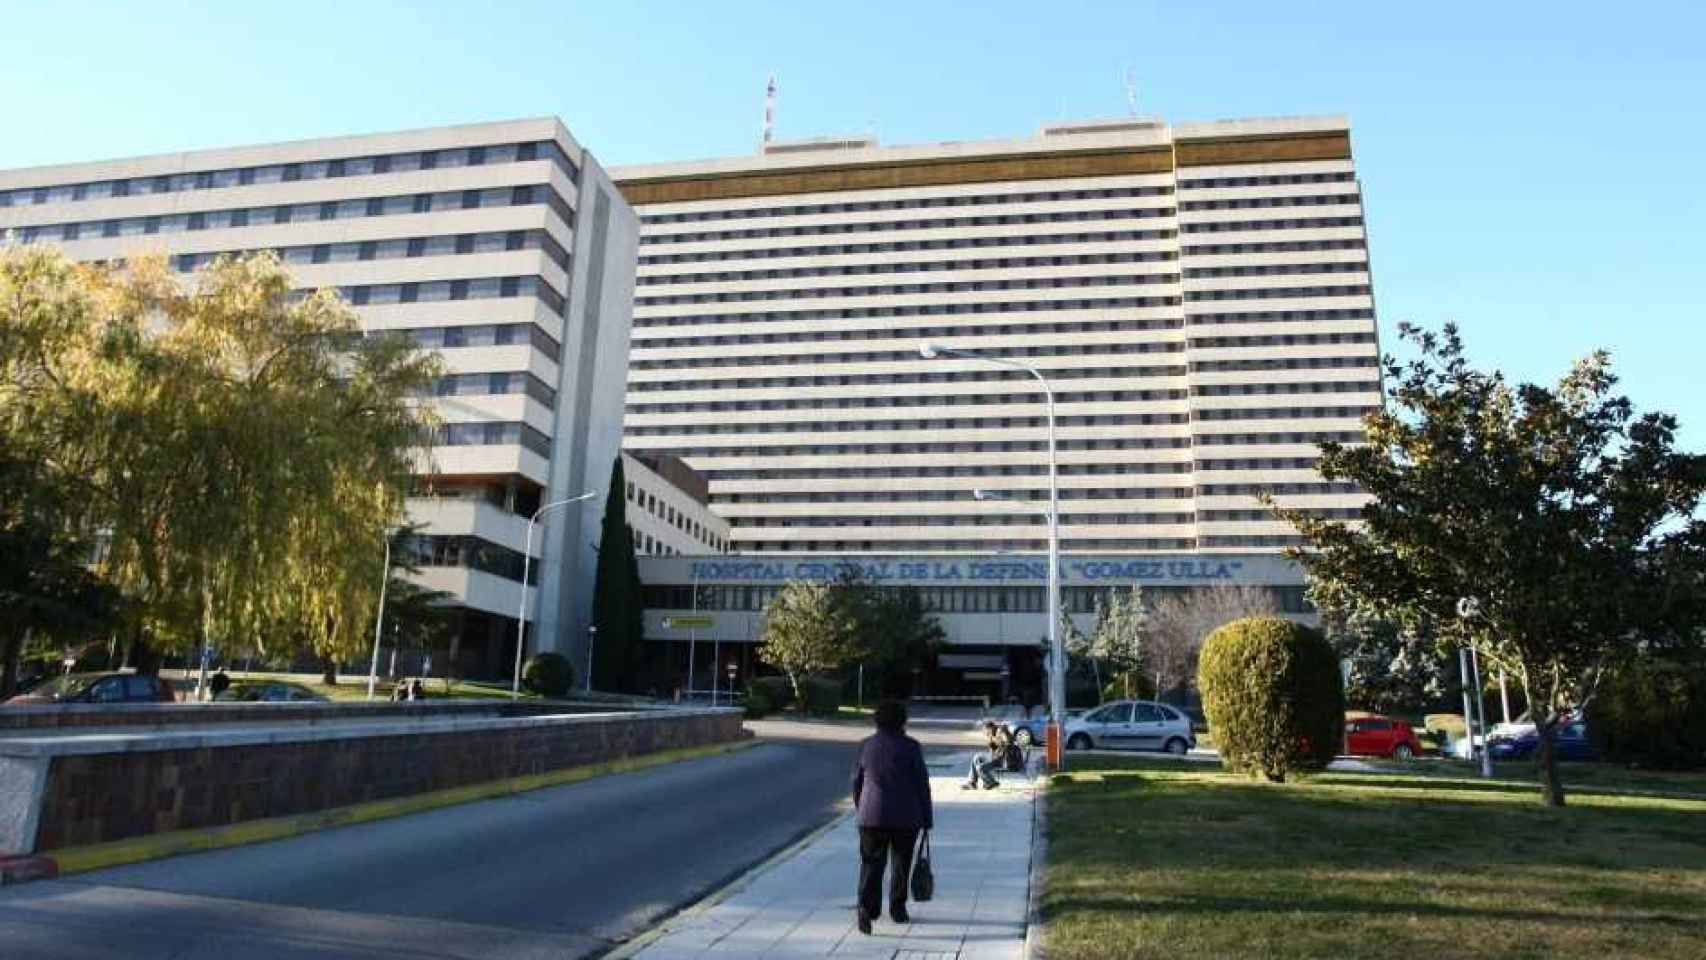 La fachada del Hospital Gómez Ulla de Madrid.